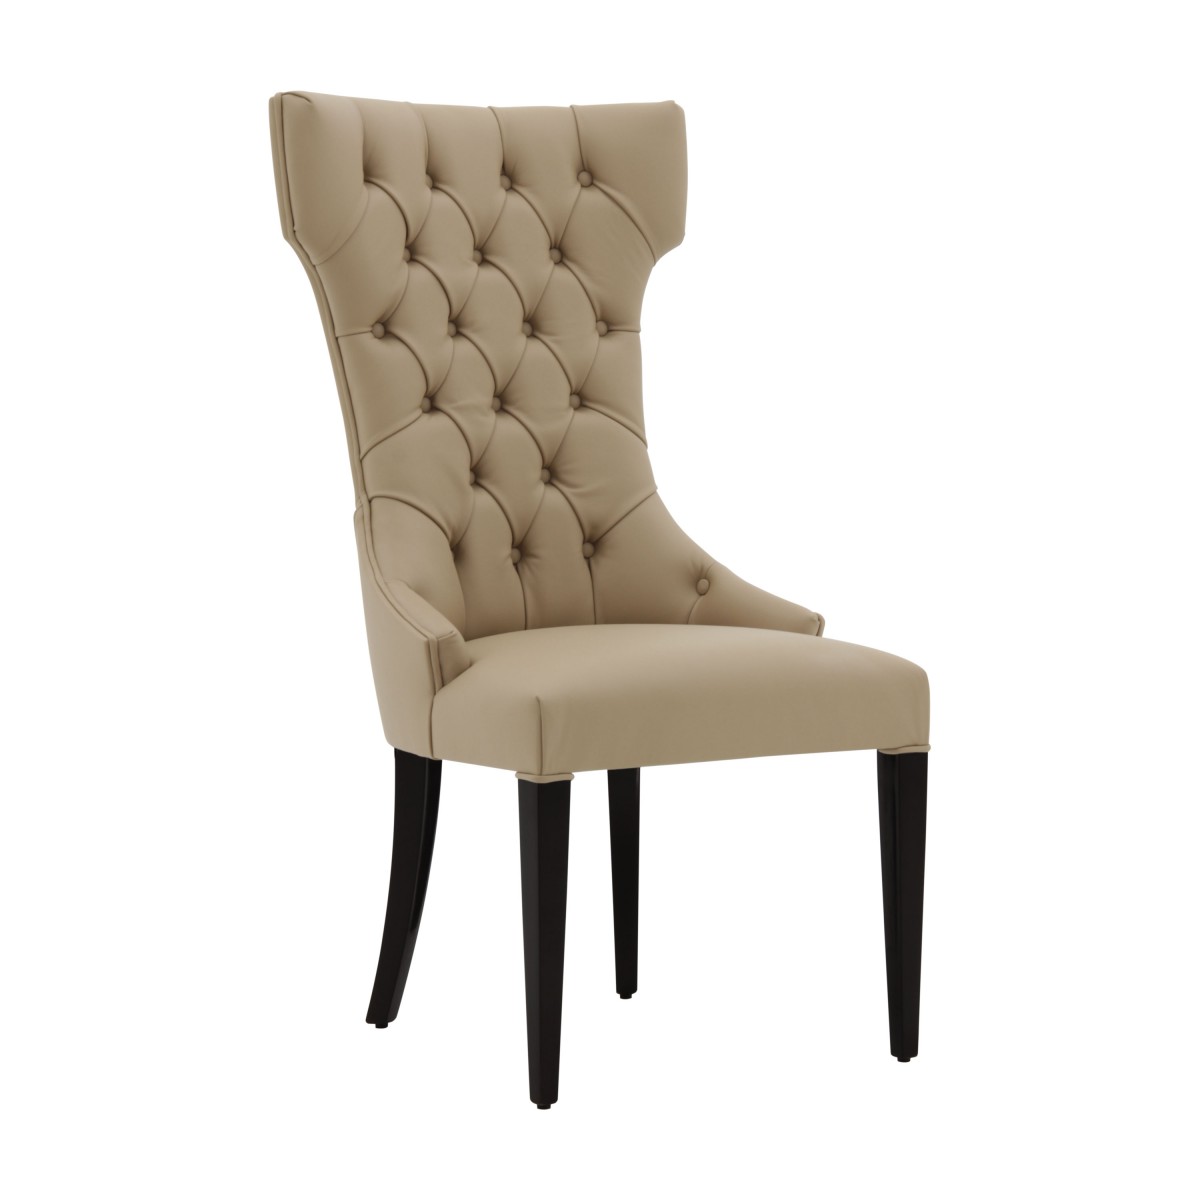 italian modern chair queen 7530